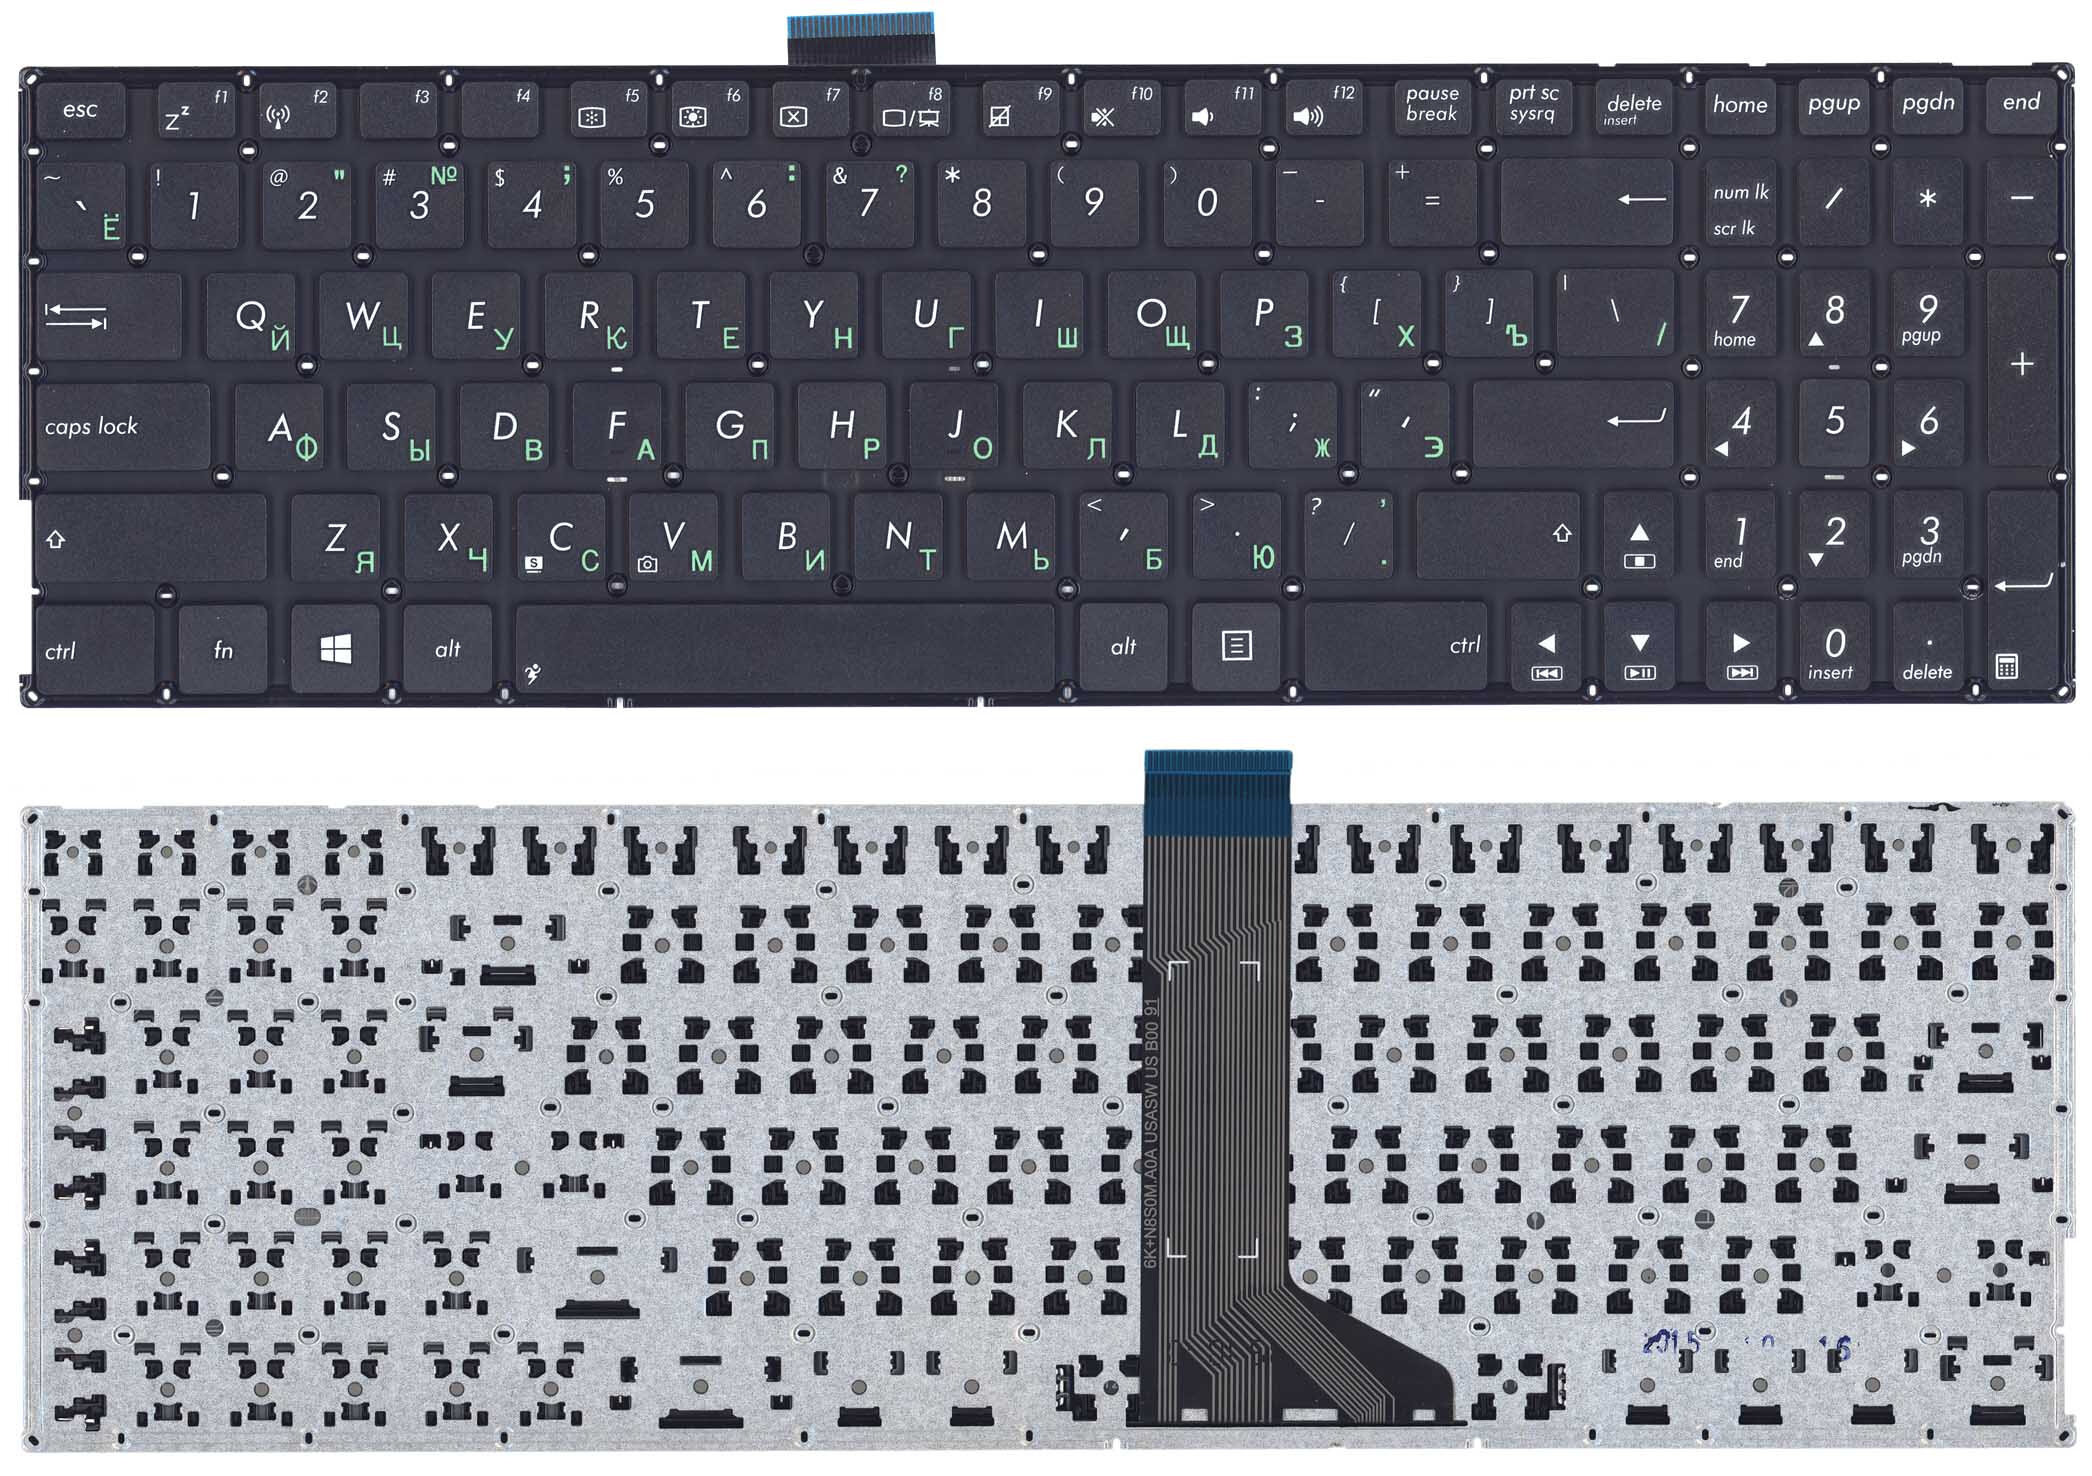 Клавиатура для Asus X555L X555LA X555LD X555LN p/n: 0KNB0-612RRU00